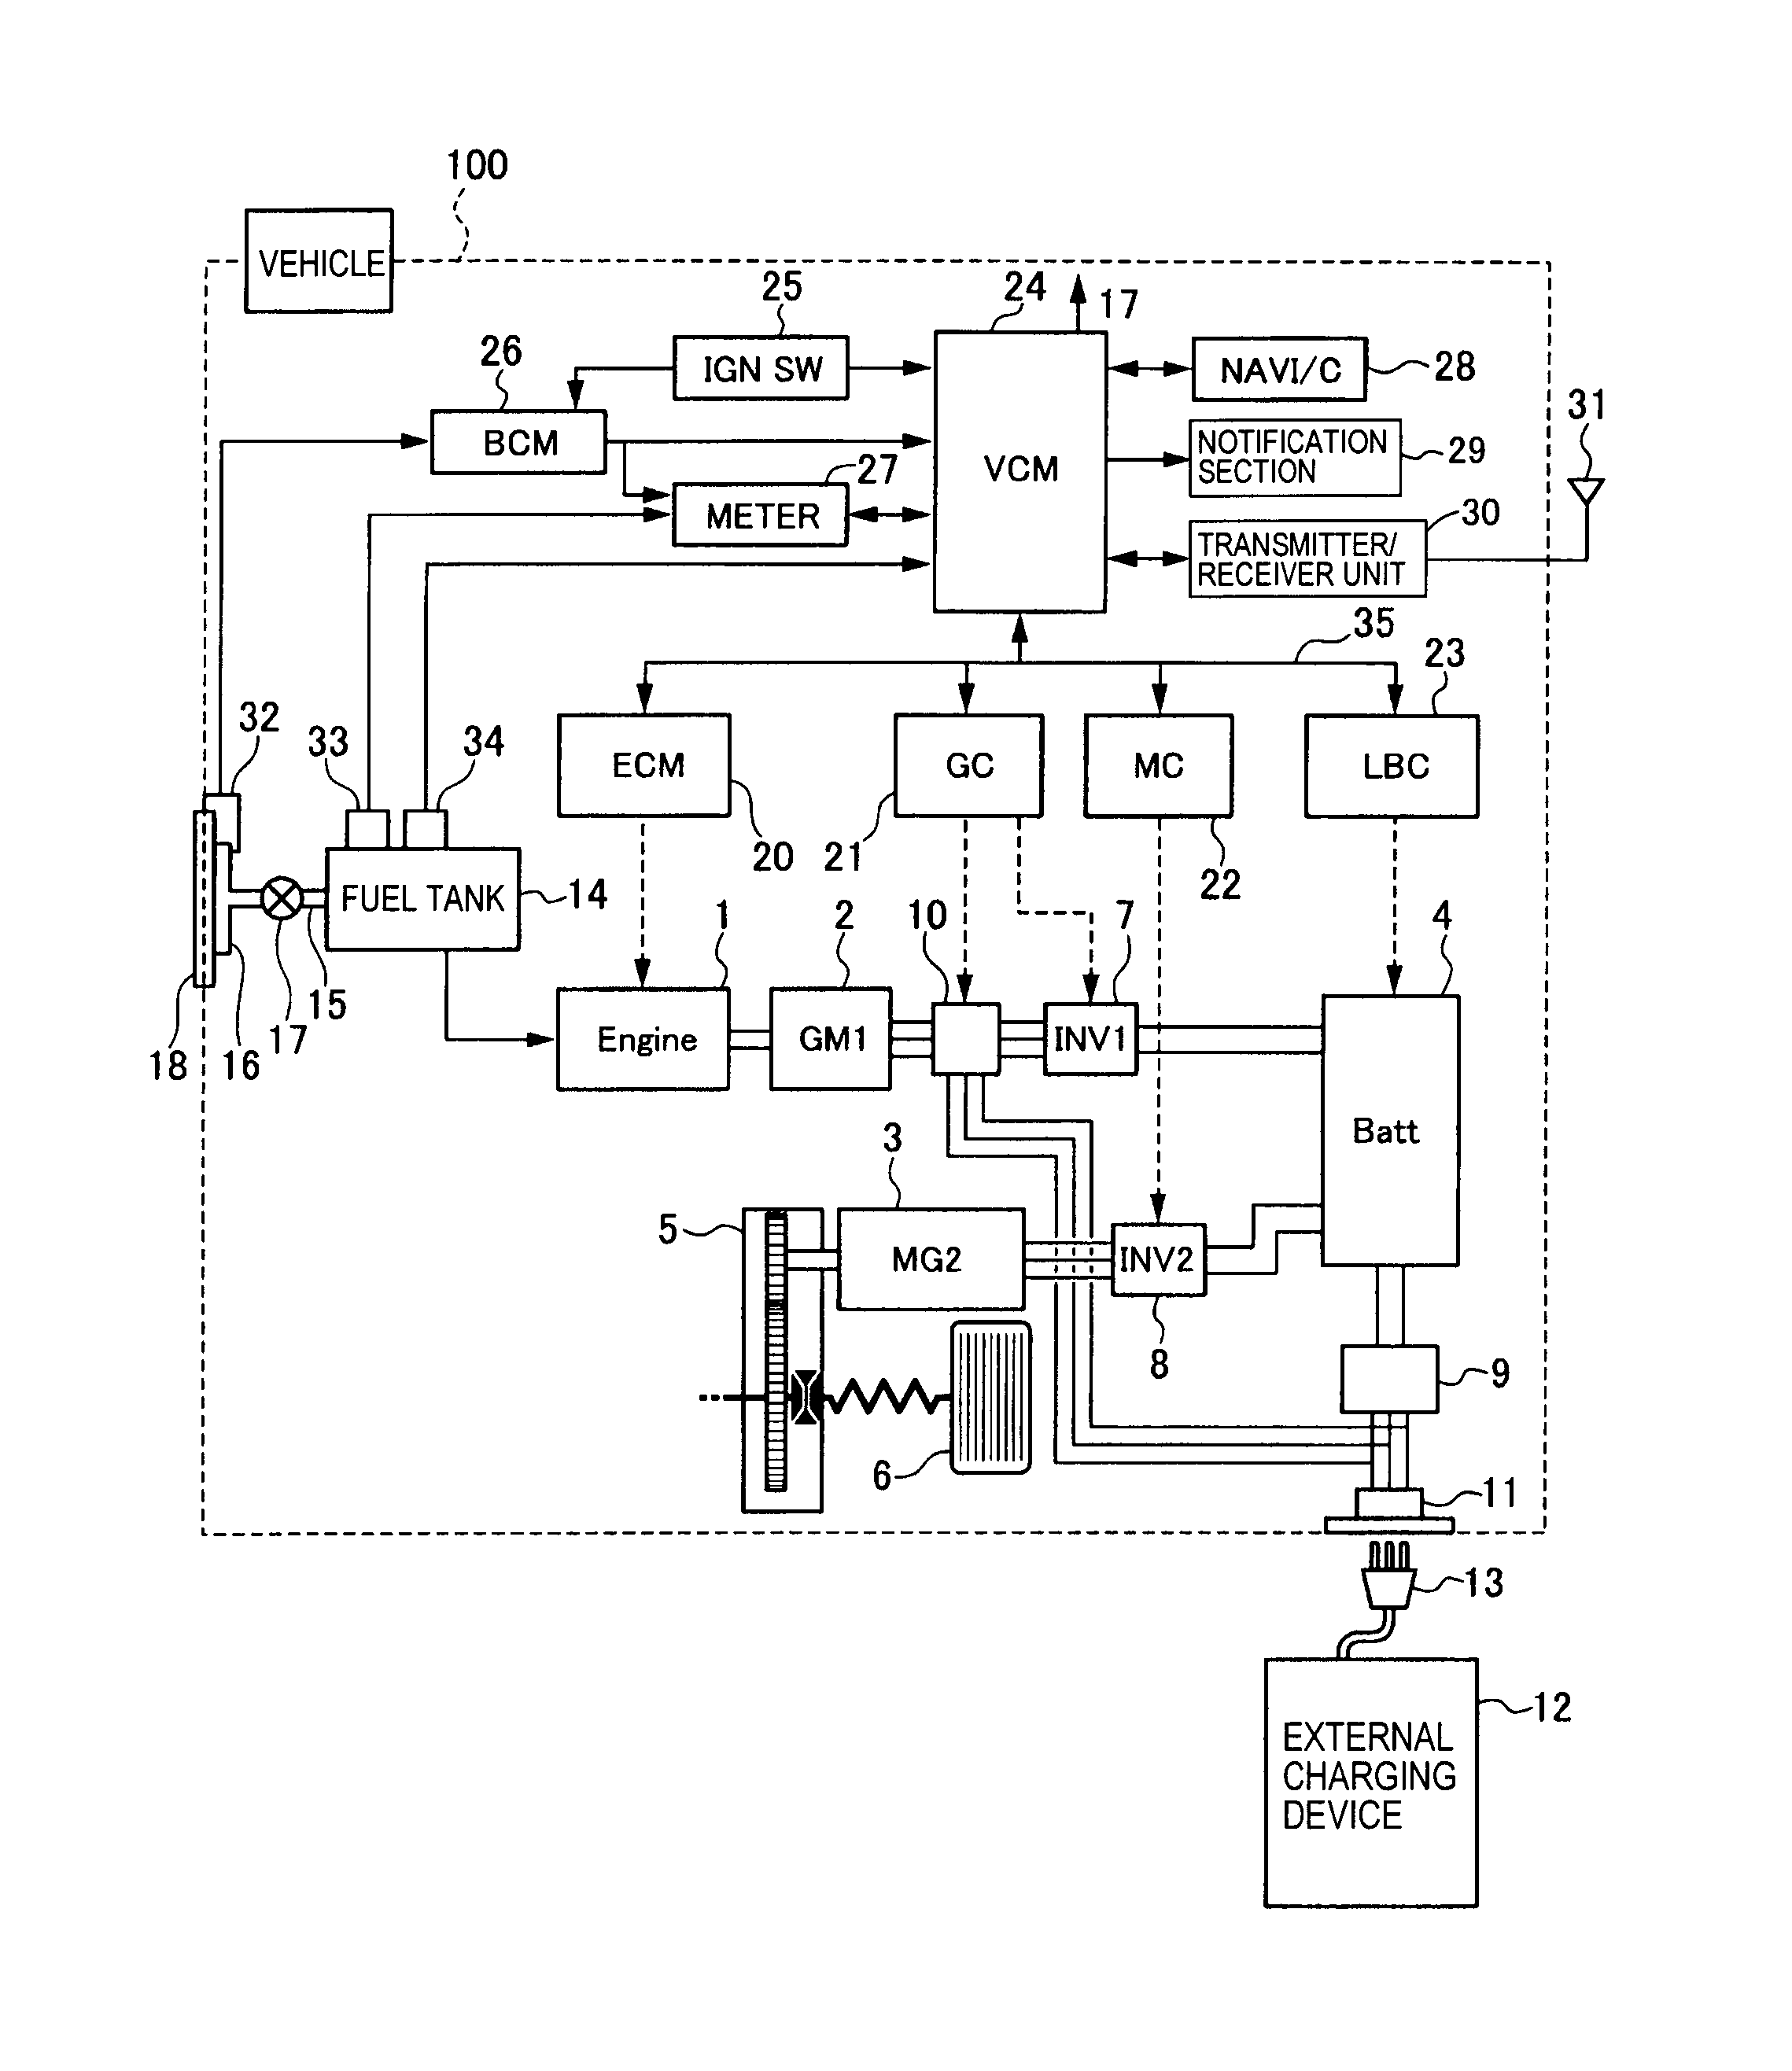 cabelas remote start generator wiring diagram